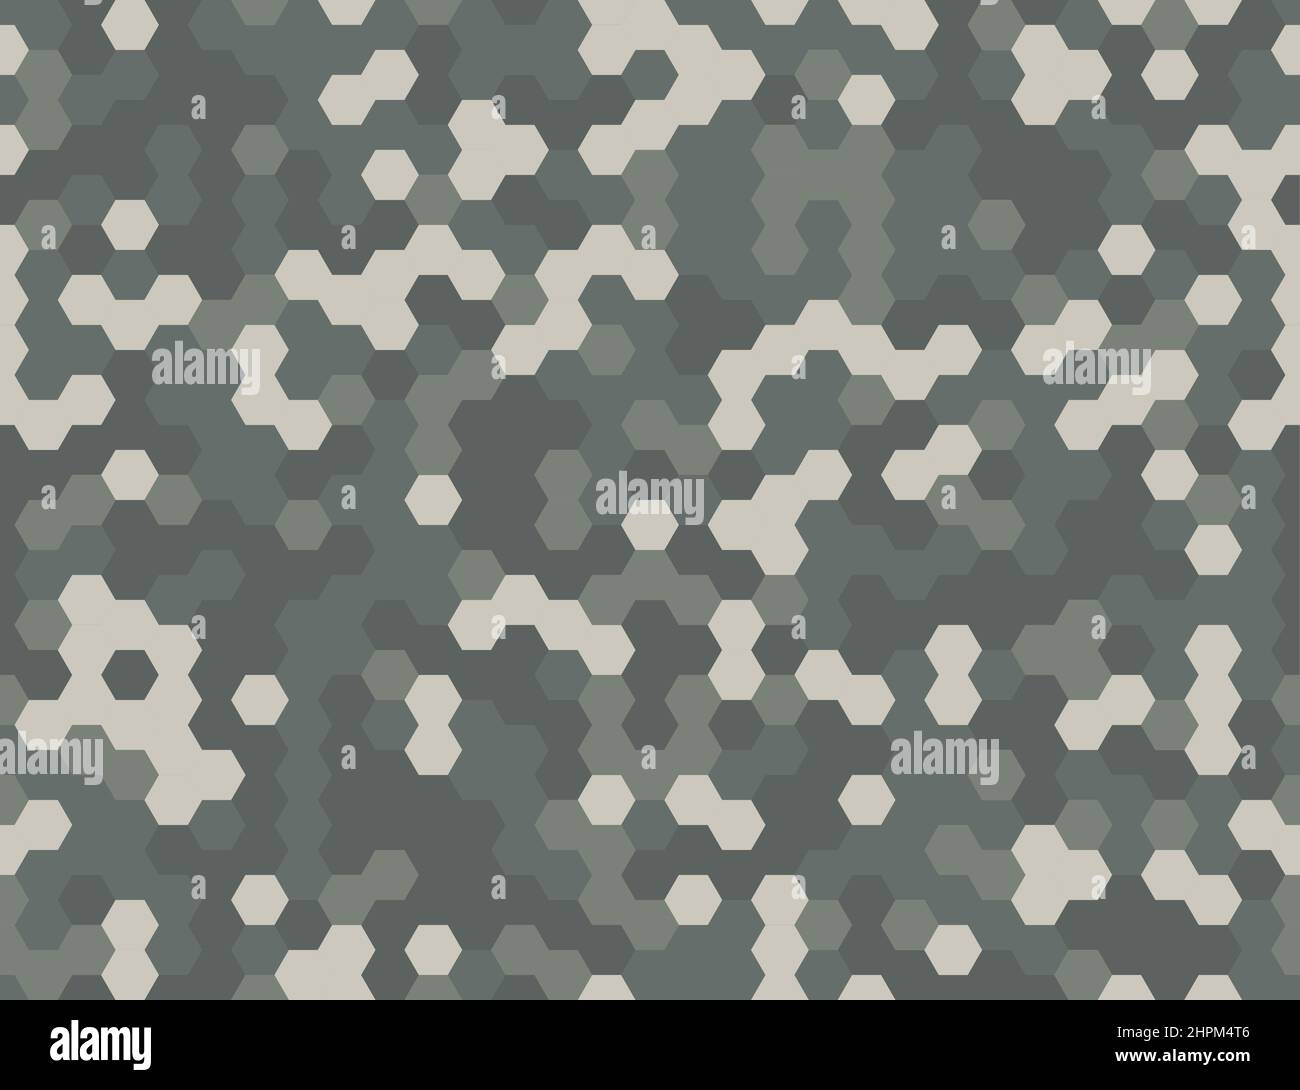 Motif camouflage militaire moderne sans couture motif de pixels gris hexagonal. Vecteur abstrait futuriste fond camouflage hexagonal. Papier d'emballage à motif géométrique TECH Illustration de Vecteur